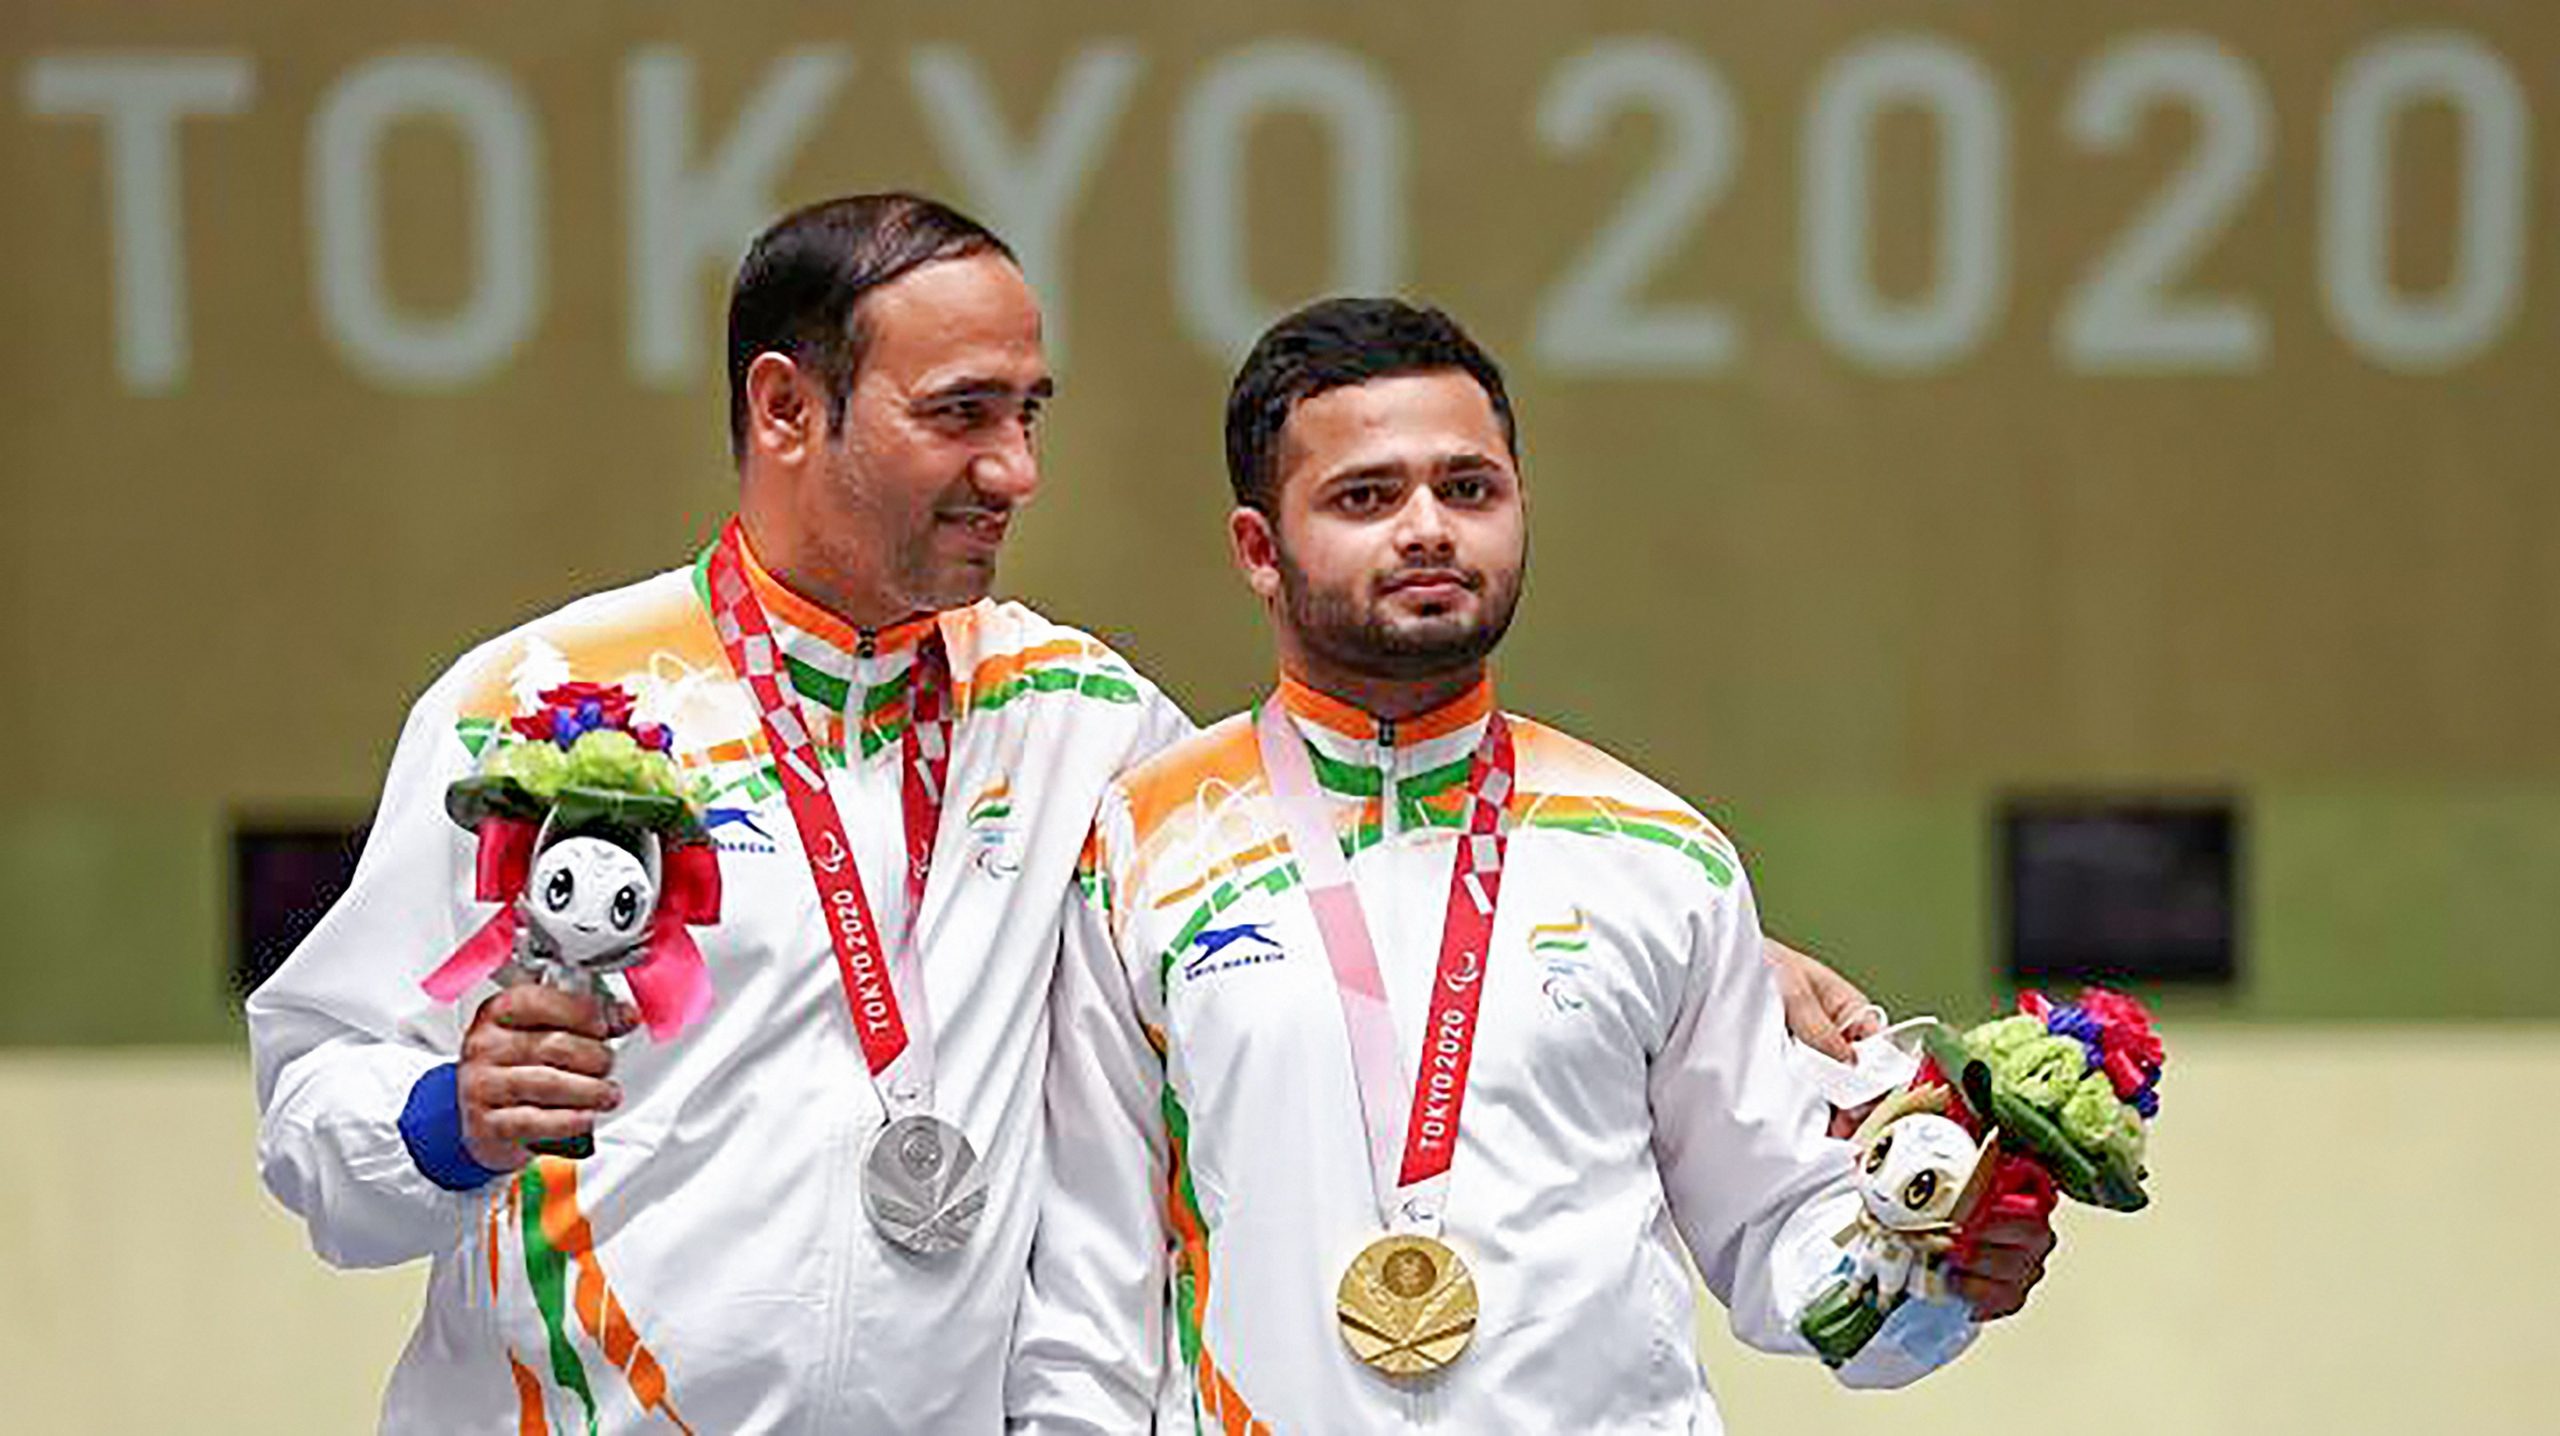 Manish Narwal’s parents proud of his gold medal at Tokyo Paralympics